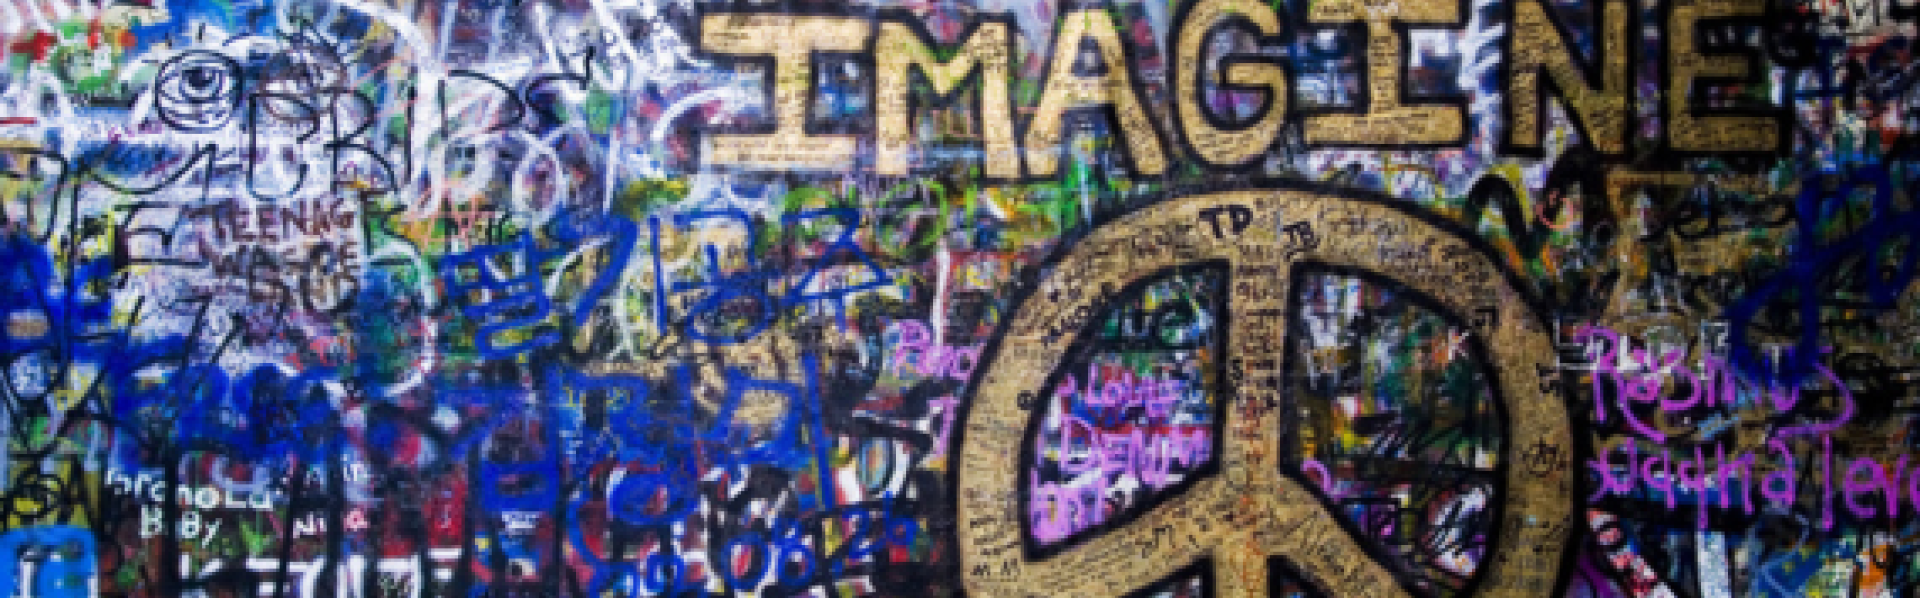 muur volgeklad met graffiti met vredesteken en het woord IMAGINE in goud geschilderd